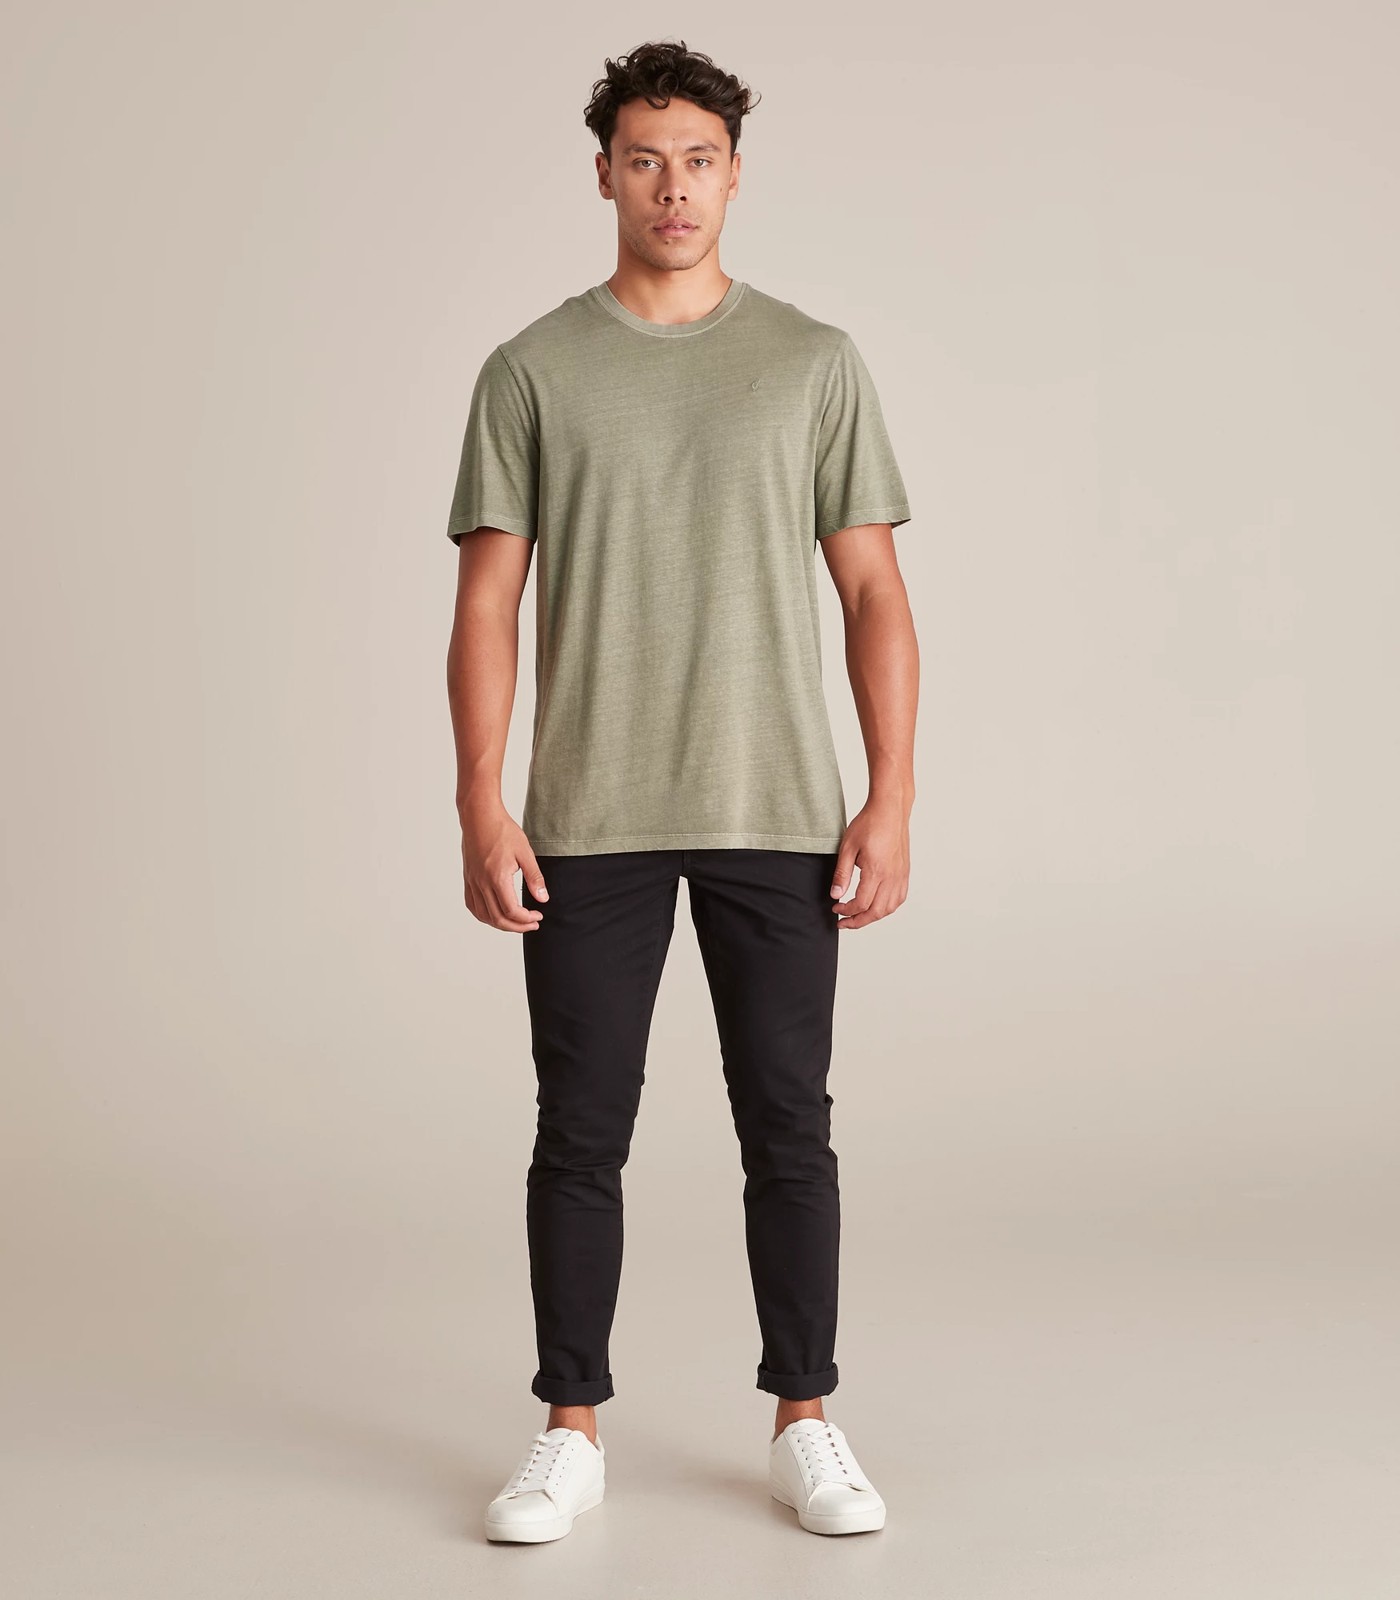 Commons T-Shirt - Veviter | Target Australia